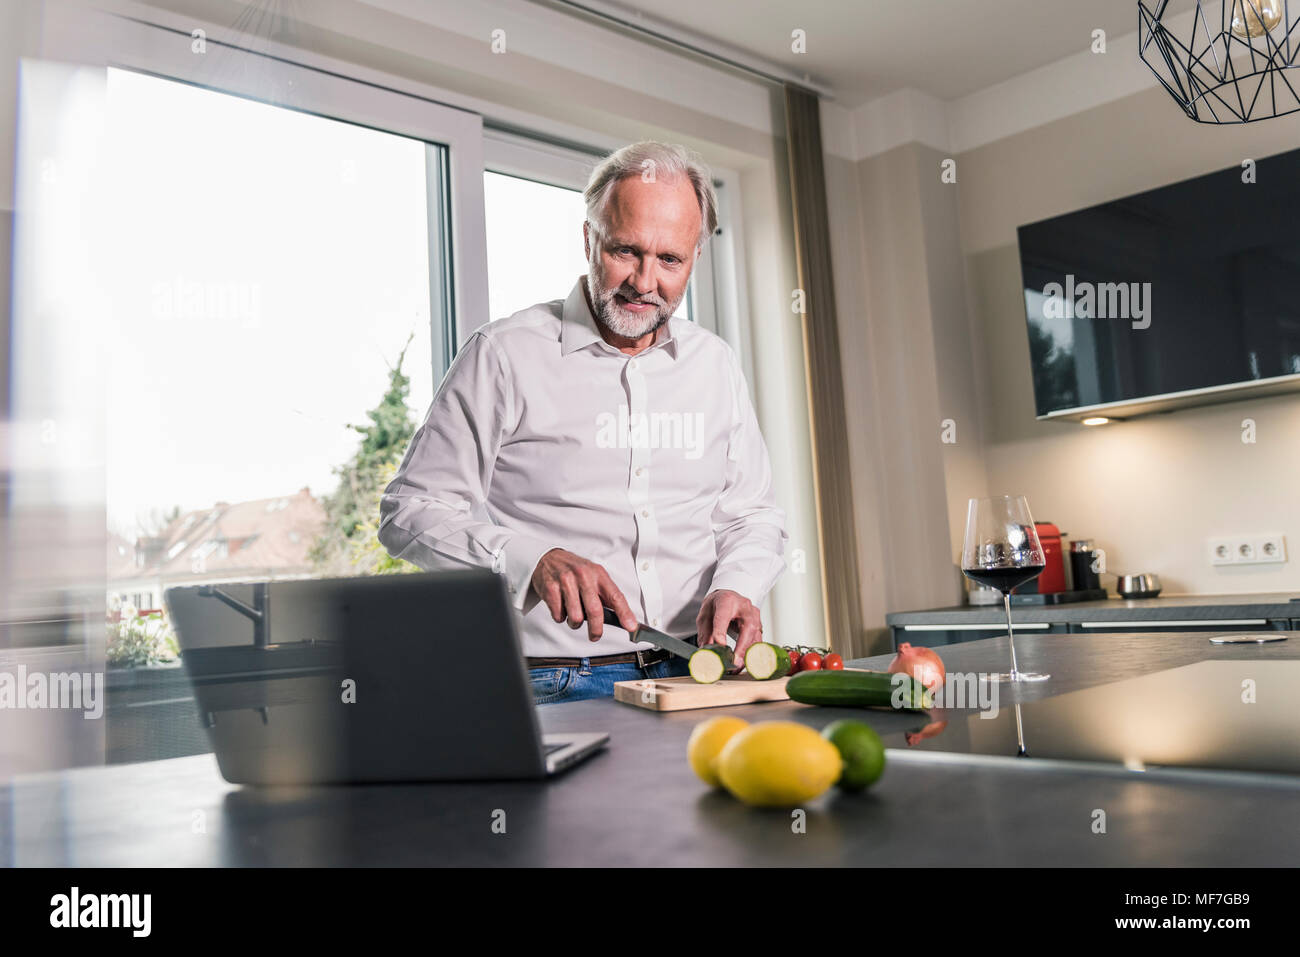 Homme mûr de préparer des aliments dans la cuisine while looking at laptop Banque D'Images